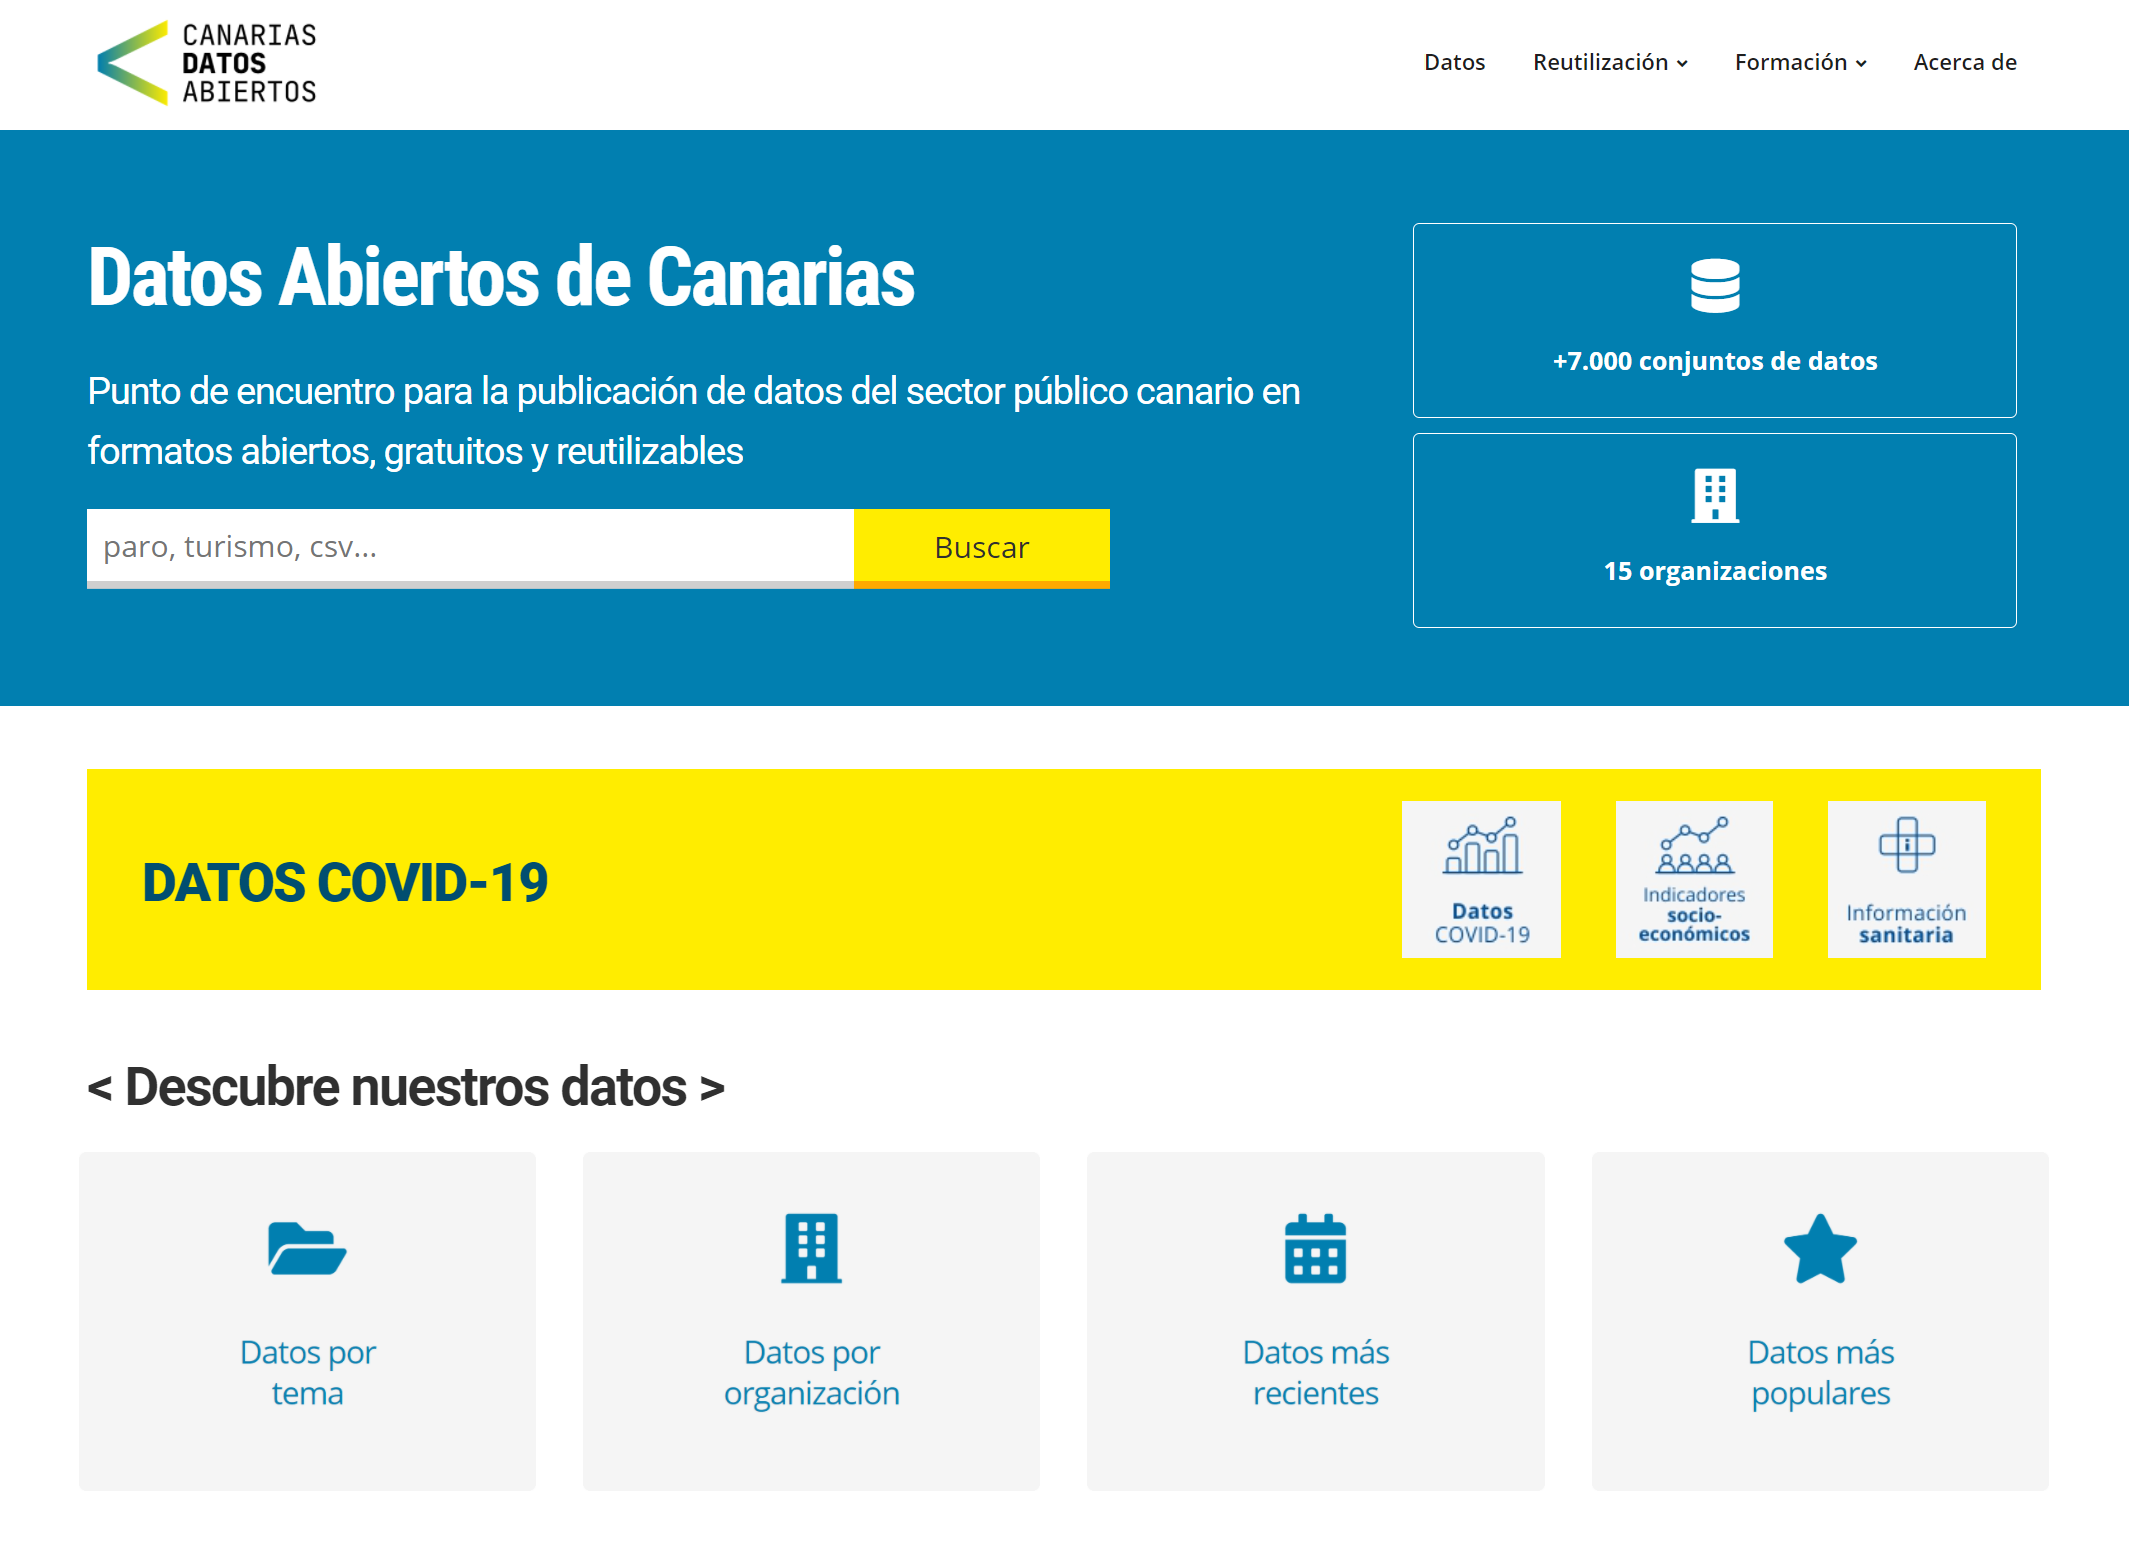 El informe de la Sociedad Digital en España 2020-2021 destaca el portal de datos abiertos de Canarias, Canarias Datos Abiertos